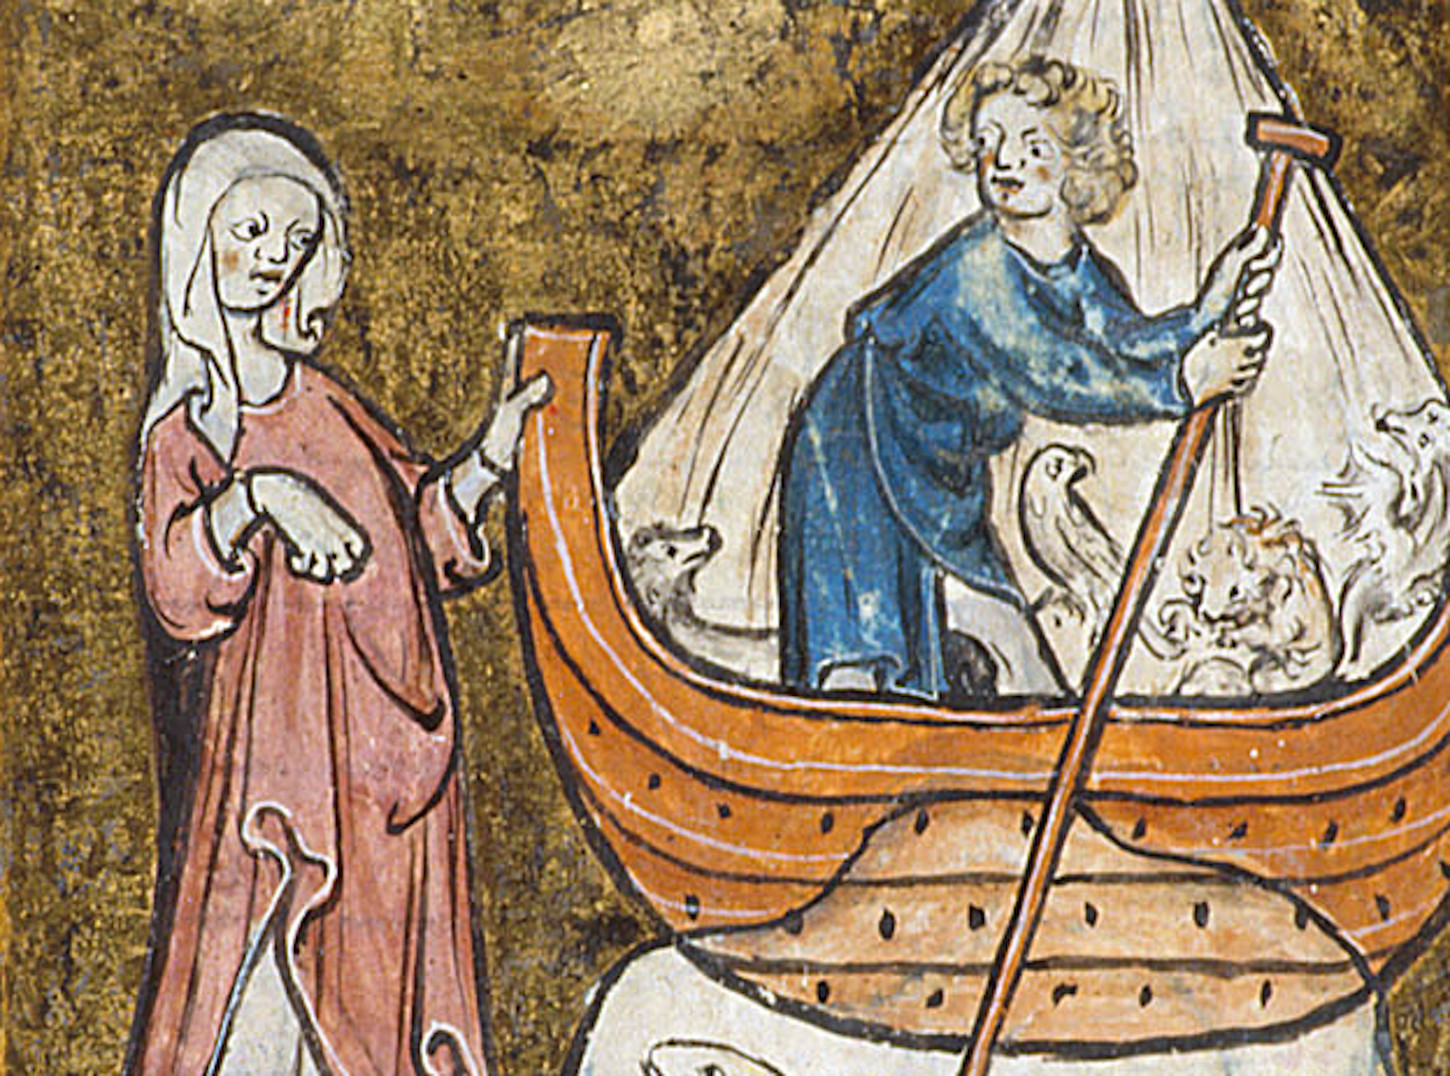 Homme sur un bateau avec des animaux (détail d'une miniature). TheBritish Library: Harley 4417 f. 46.